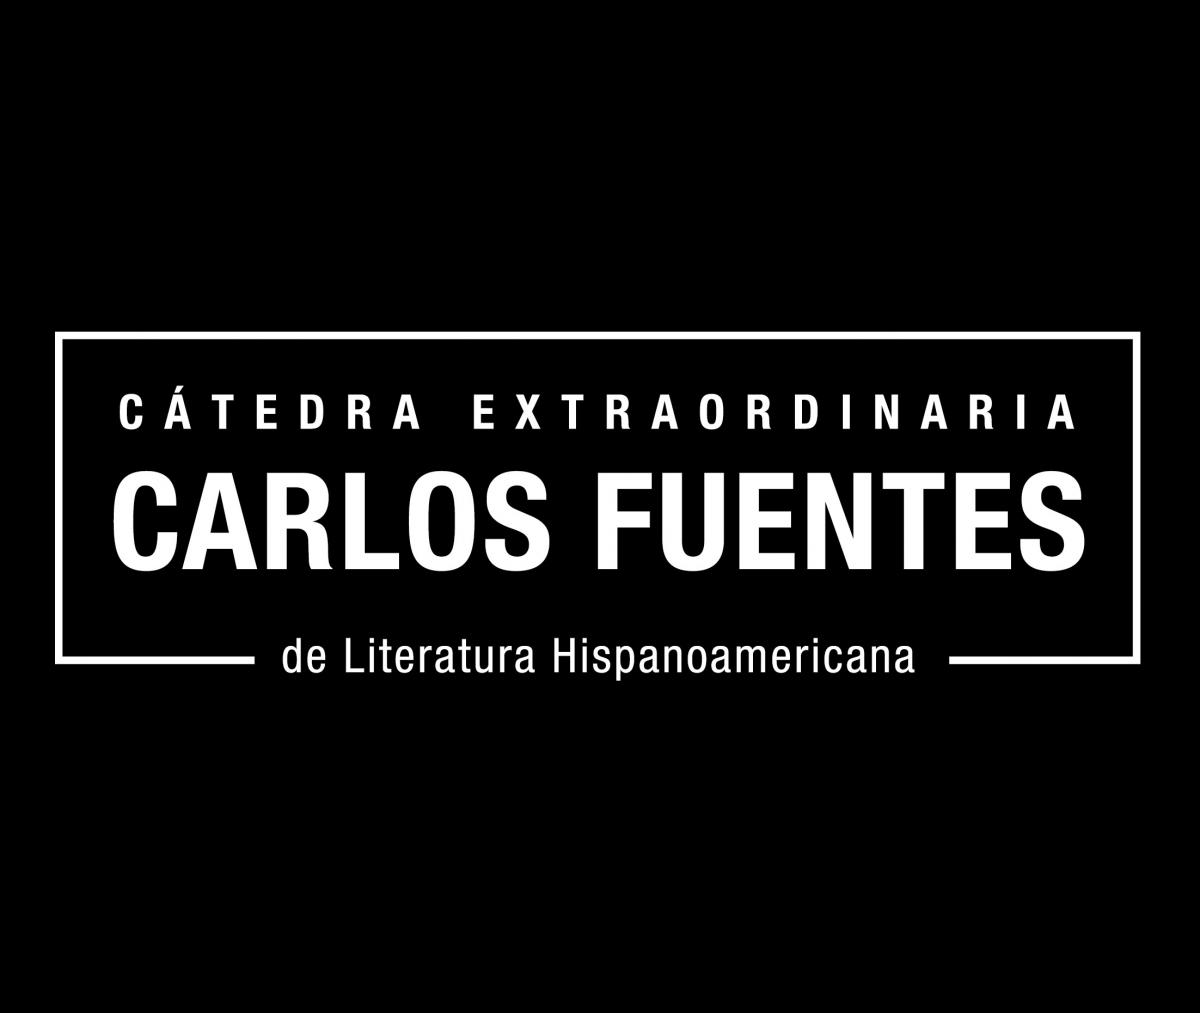 Cátedra Extraordinaria Carlos Fuentes de Literatura Hispanoamericana